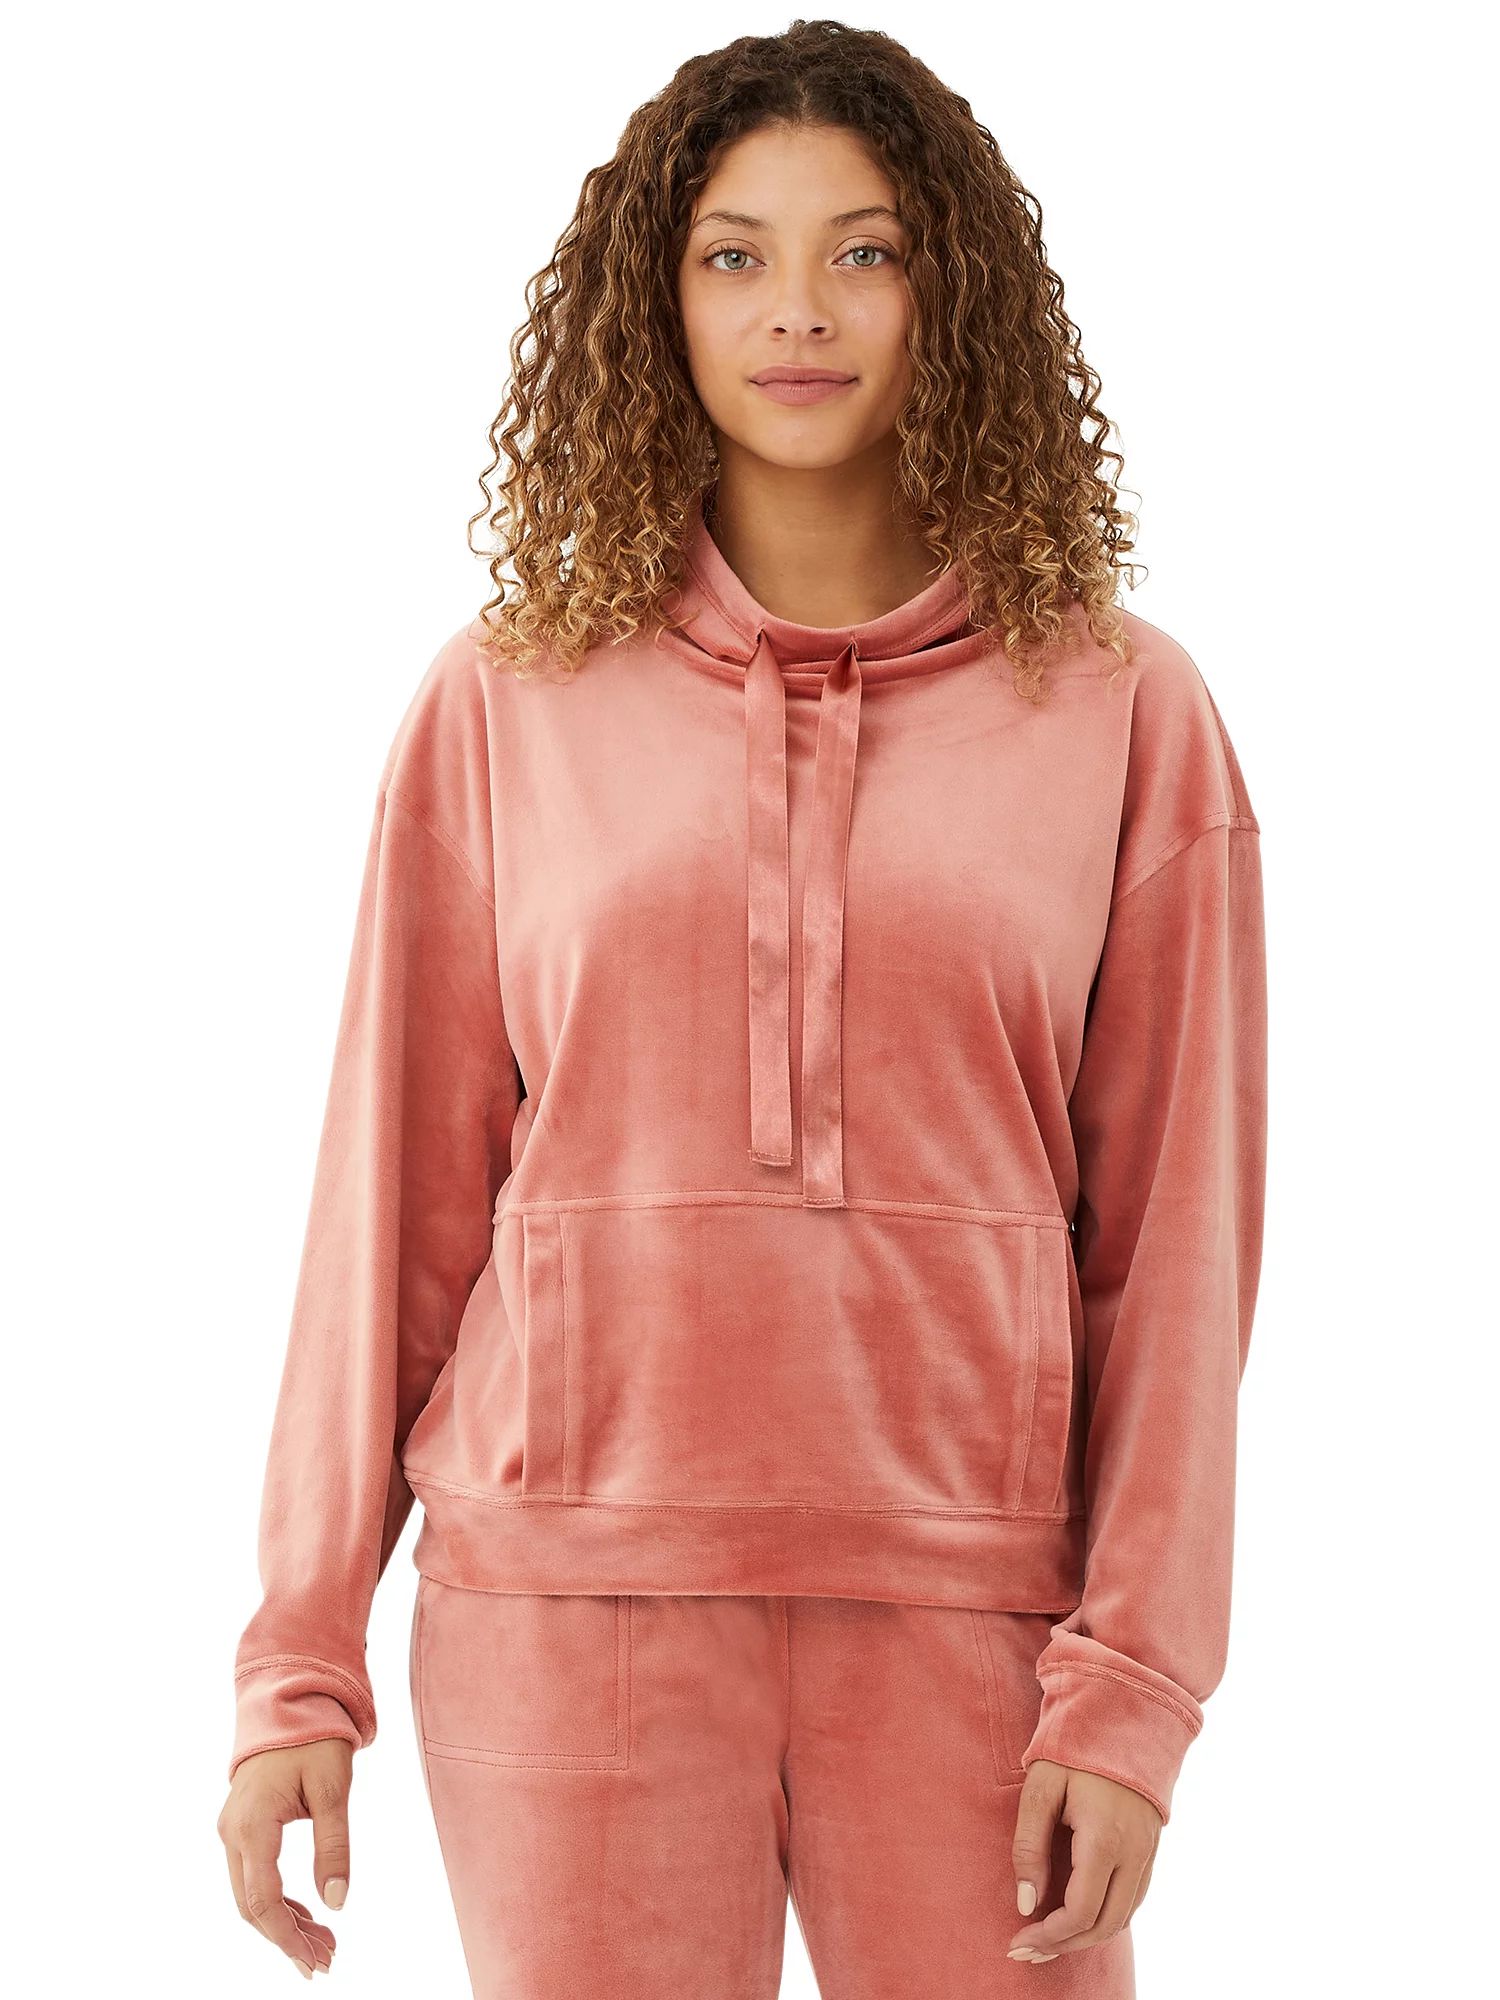 Scoop Women’s Funnel Neck Velour Sweatshirt with Pockets | Walmart (US)